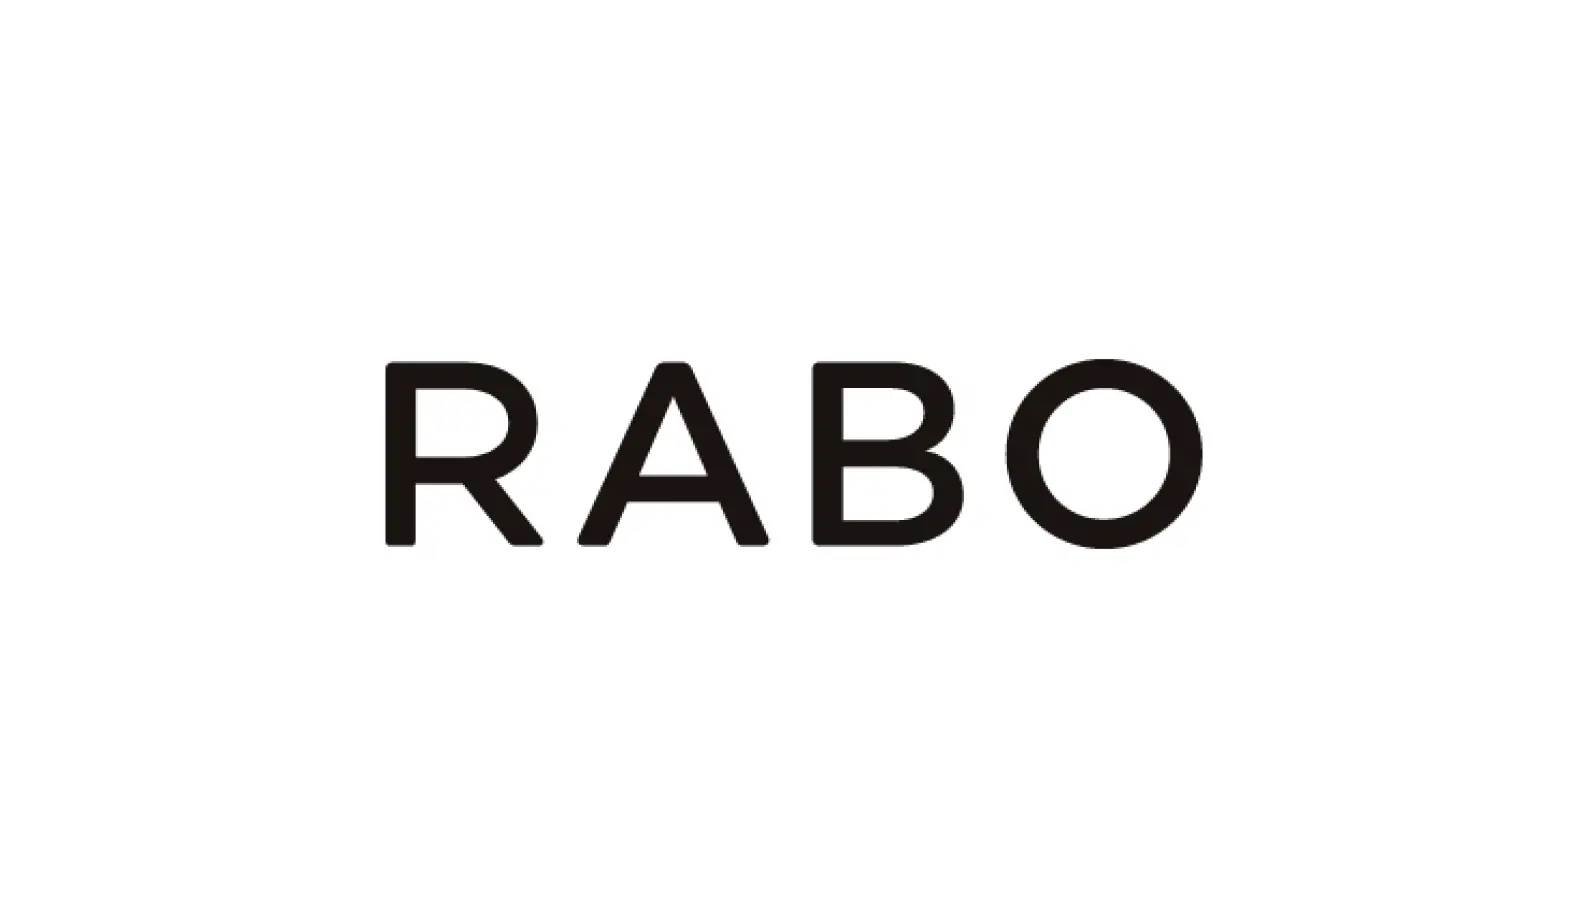 Catlog®を展開するRABO、シリーズBで約13.2億円の資金調達。約44億件の世界最大規模の猫様データを活用した事業の展開と、アニマルウェルフェアを軸としたESG経営の推進を先導の画像